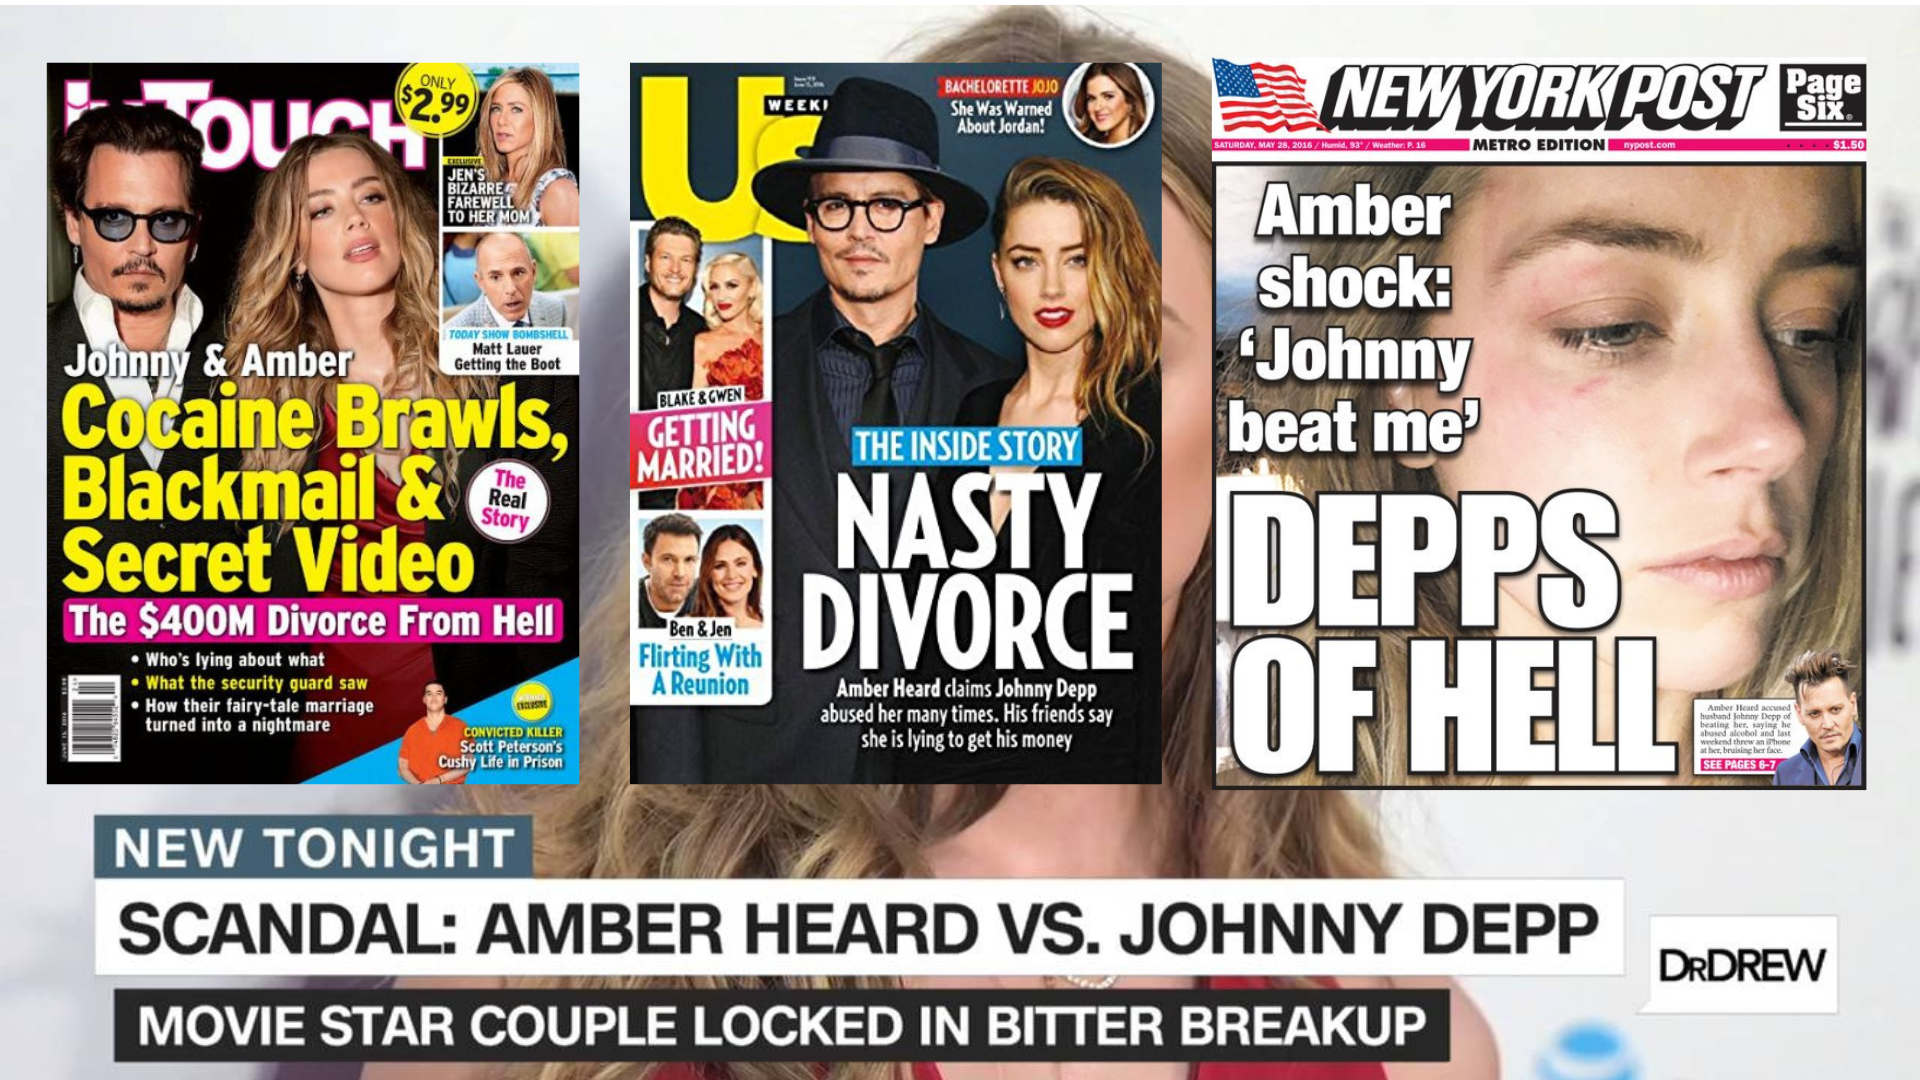 Kaikki mitä luulit tietäväsi Johnny Deppin ja Amber Heardin erosta on luultavasti väärin